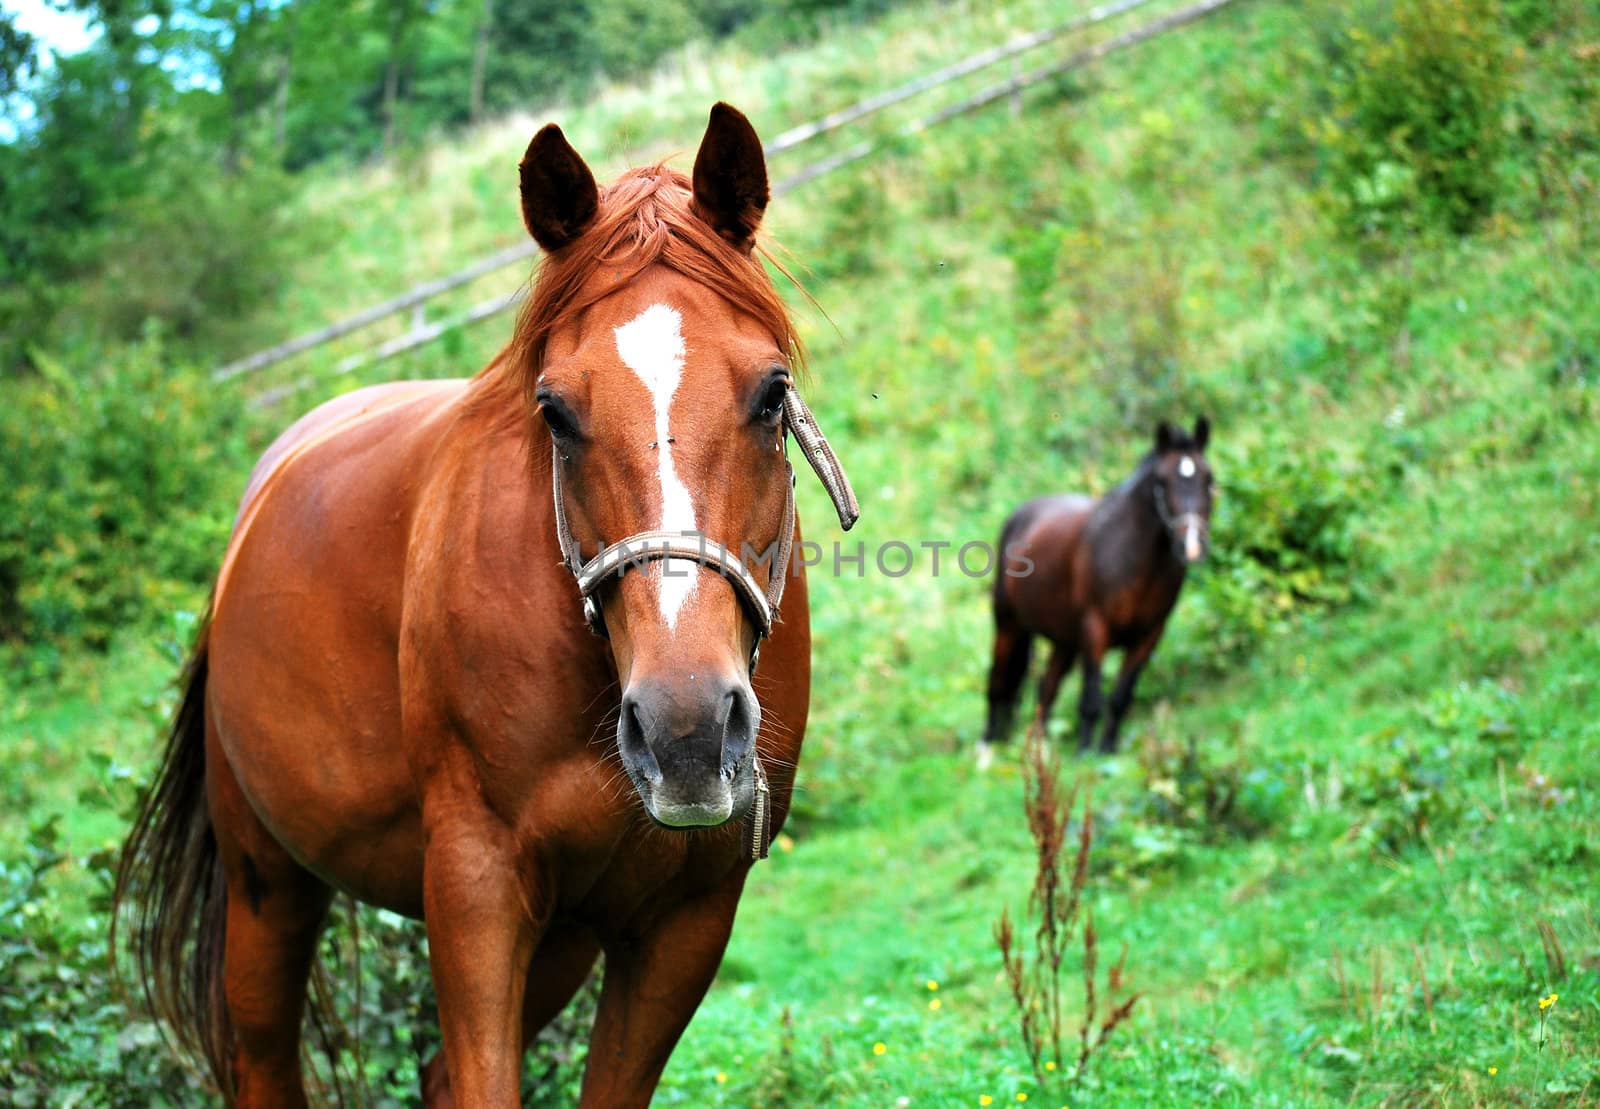 chestnut horses on grazing